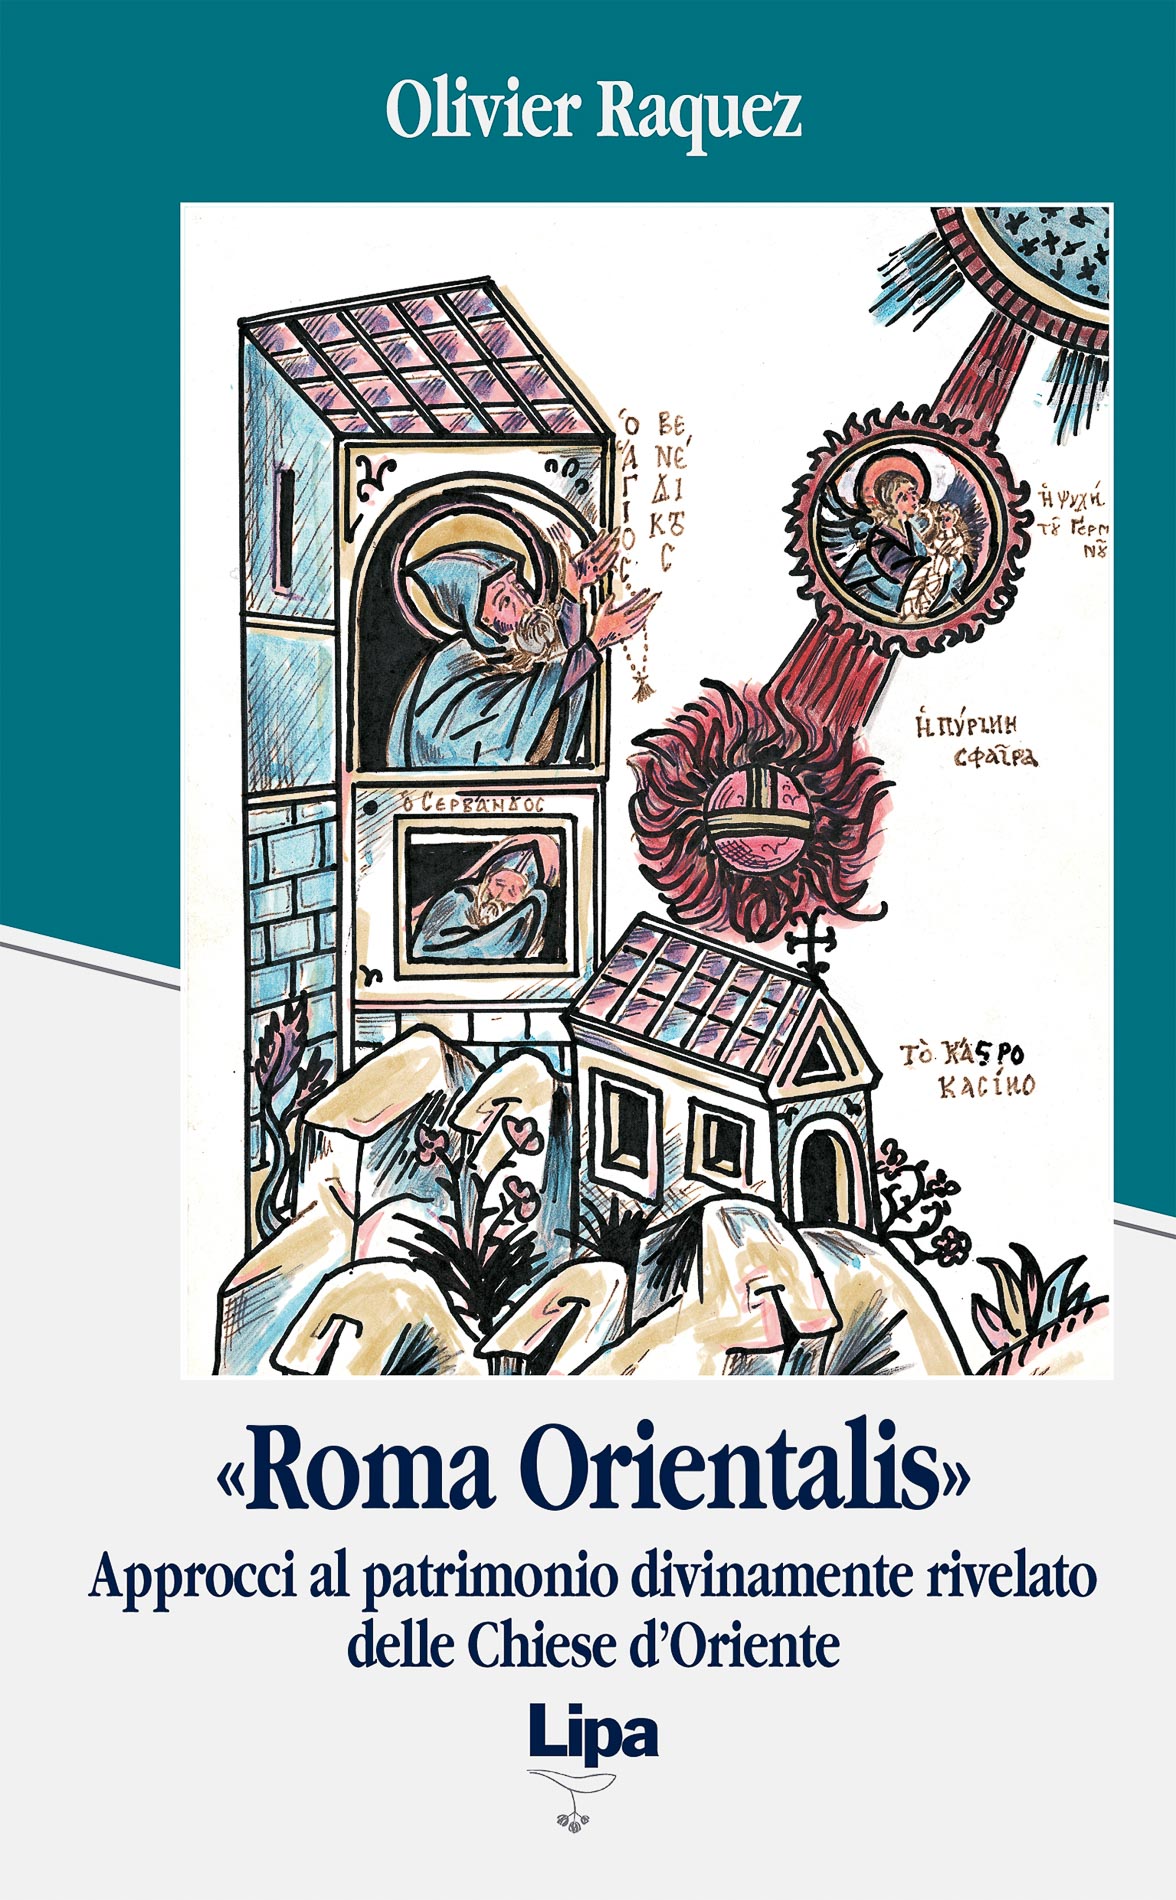 Copertina del libro "Roma Orientalis"